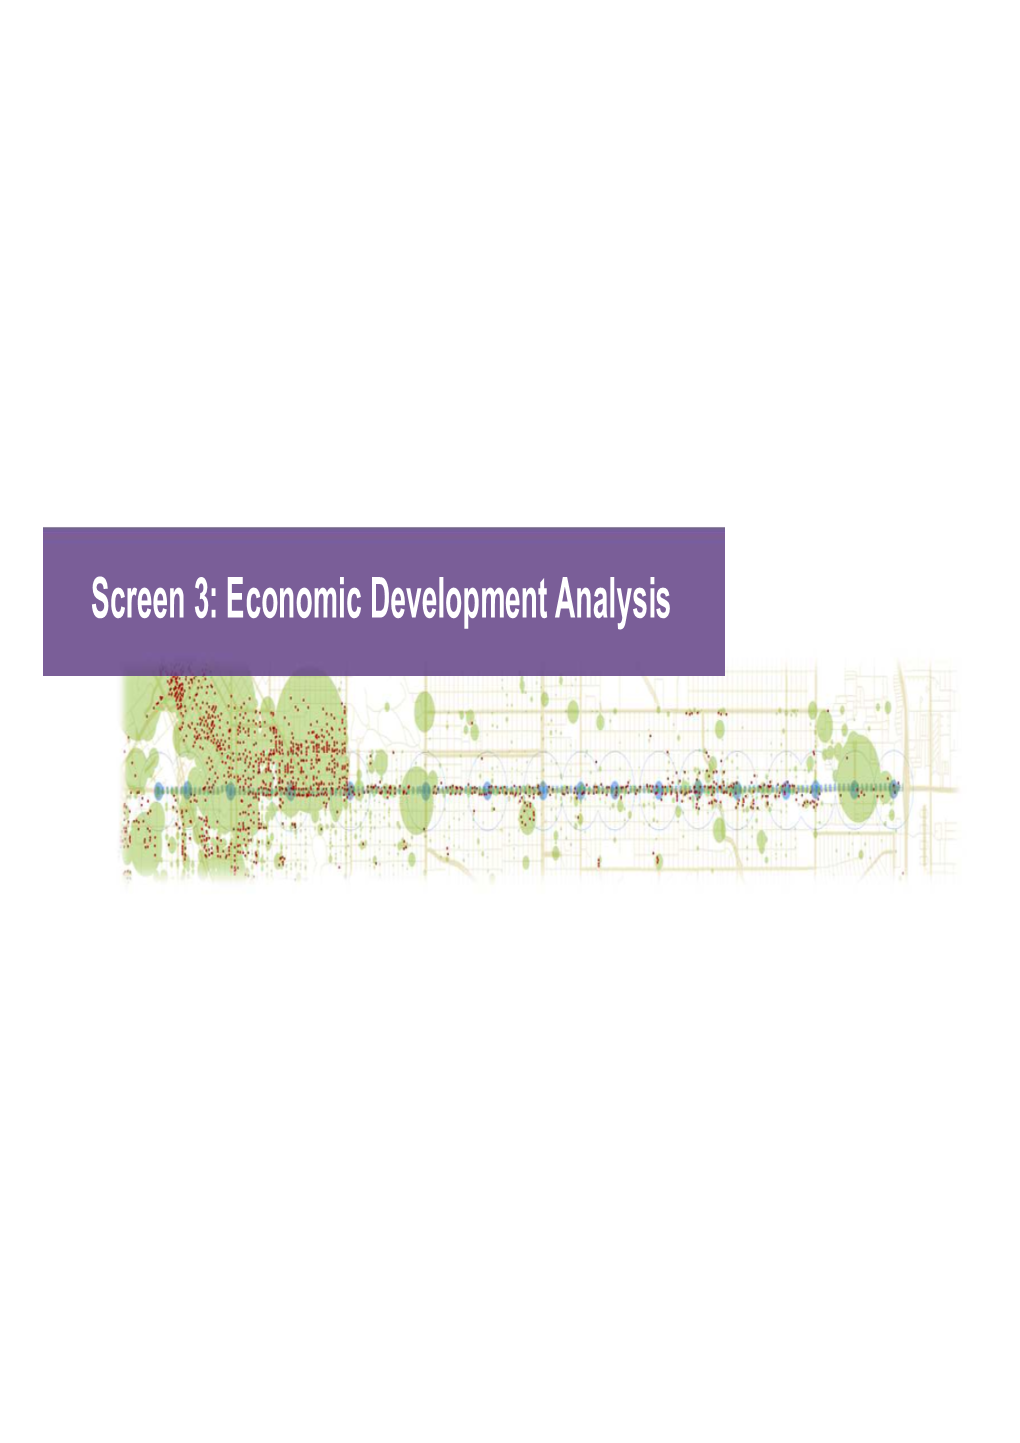 Colfax Economic Development Impacts